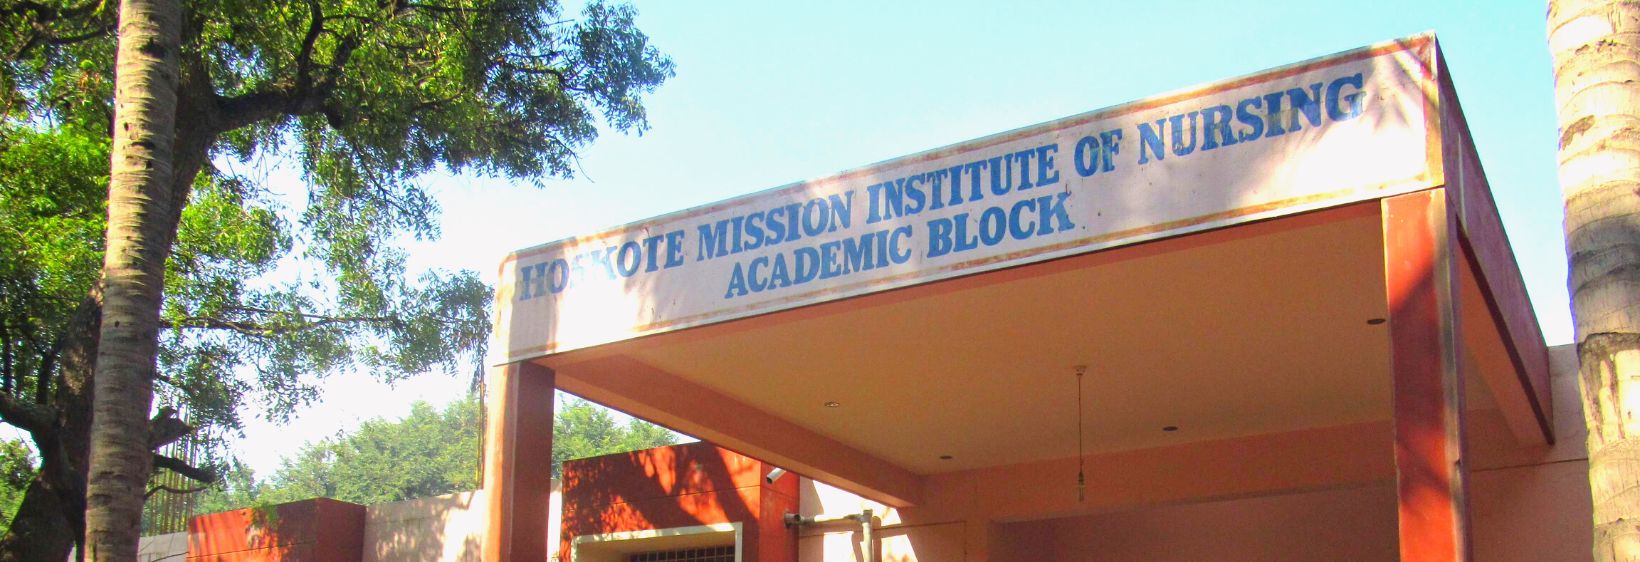 Hoskote Mission Institute of Nursing - Bangalore